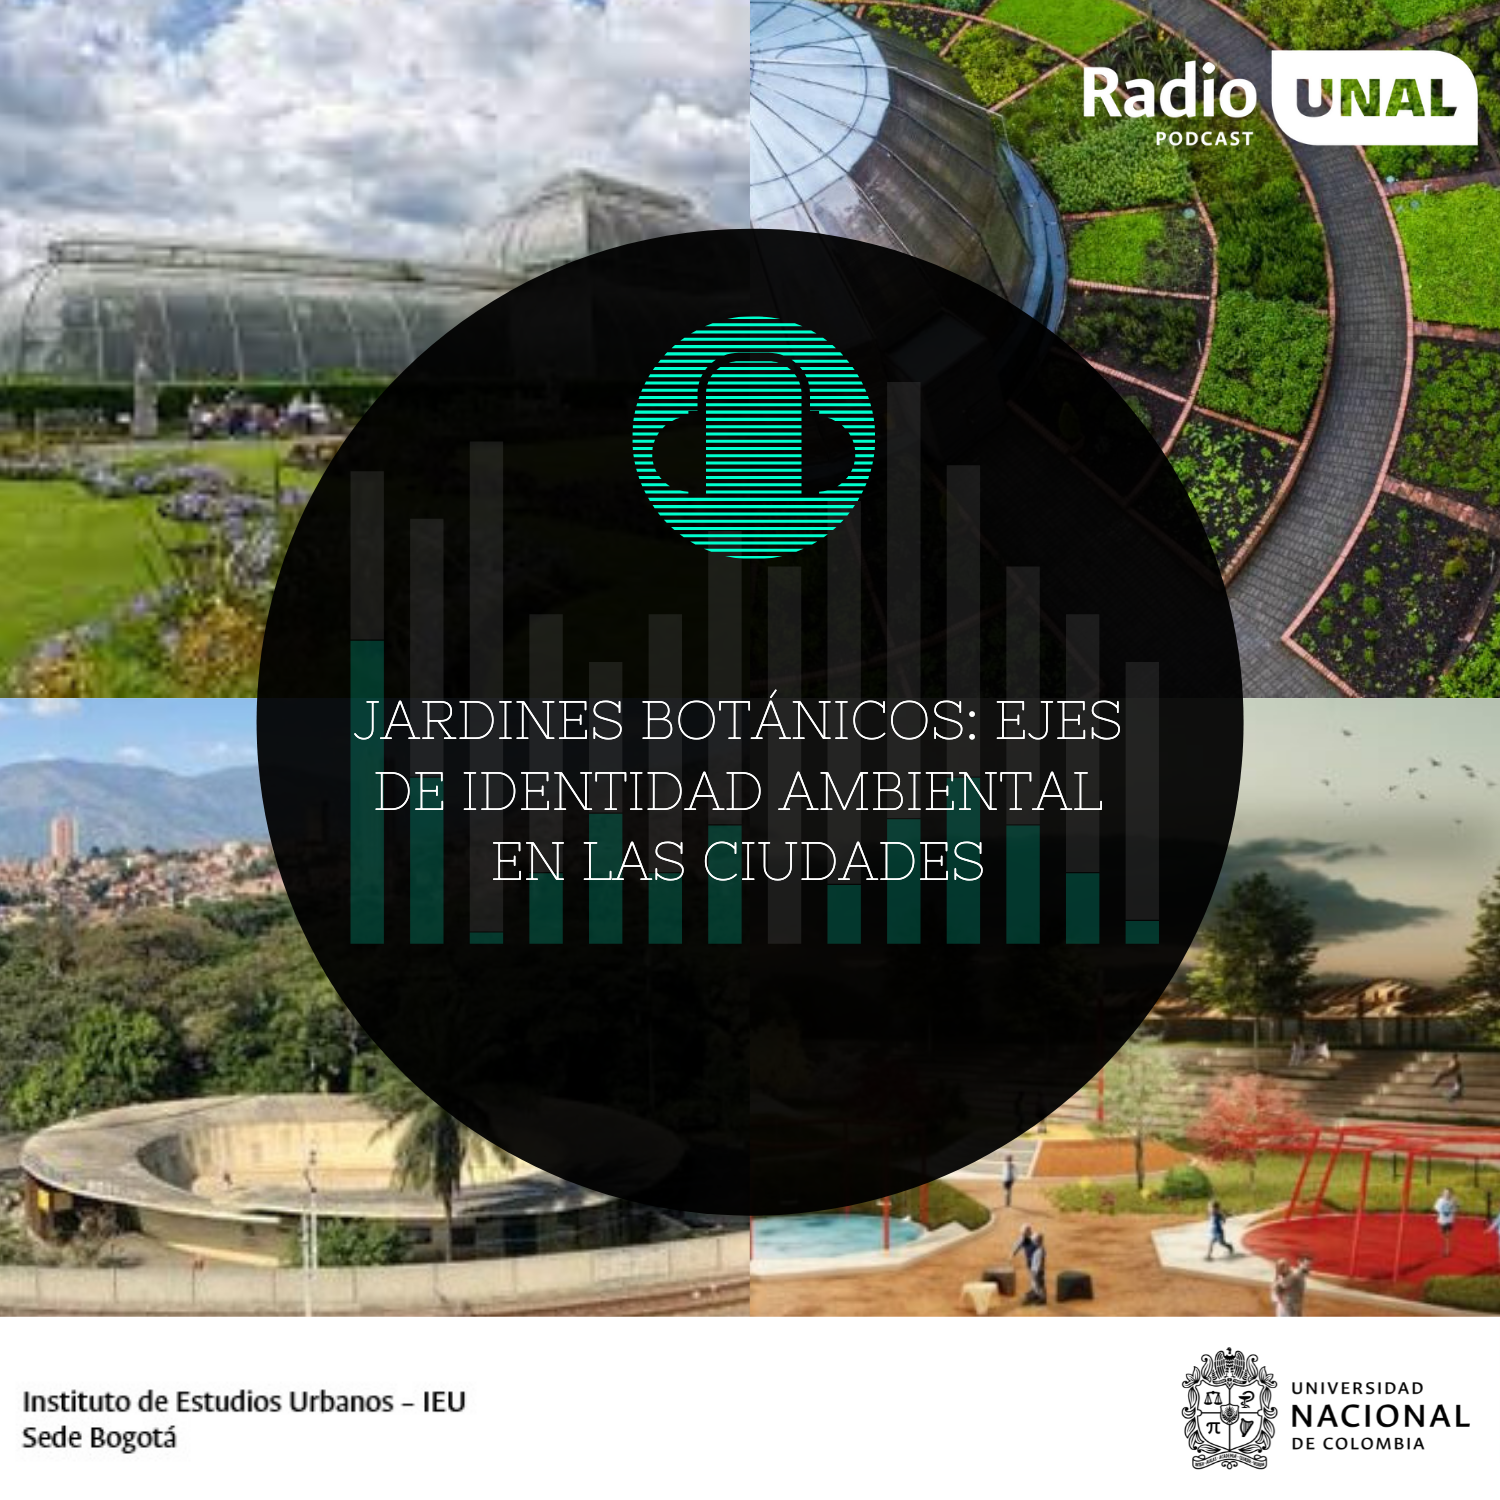 #PodcastRadioUnal Jardines botánicos: ejes de identidad ambiental en las ciudades